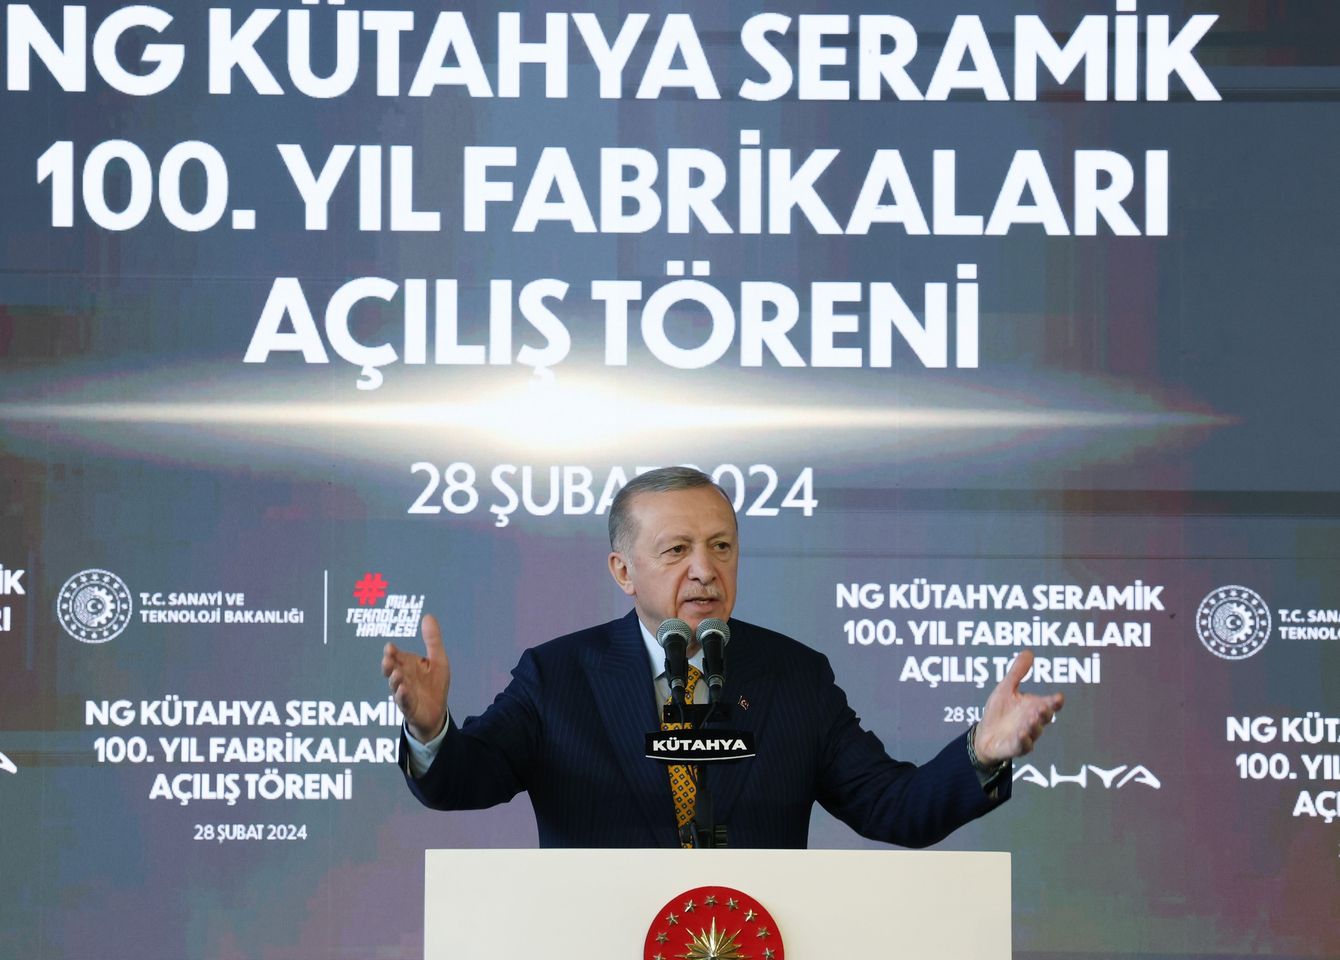 Cumhurbaşkanı Erdoğan, Kütahya'da Önde Gelen Bir Seramik Tesisinin Açılış Törenine Katıldı